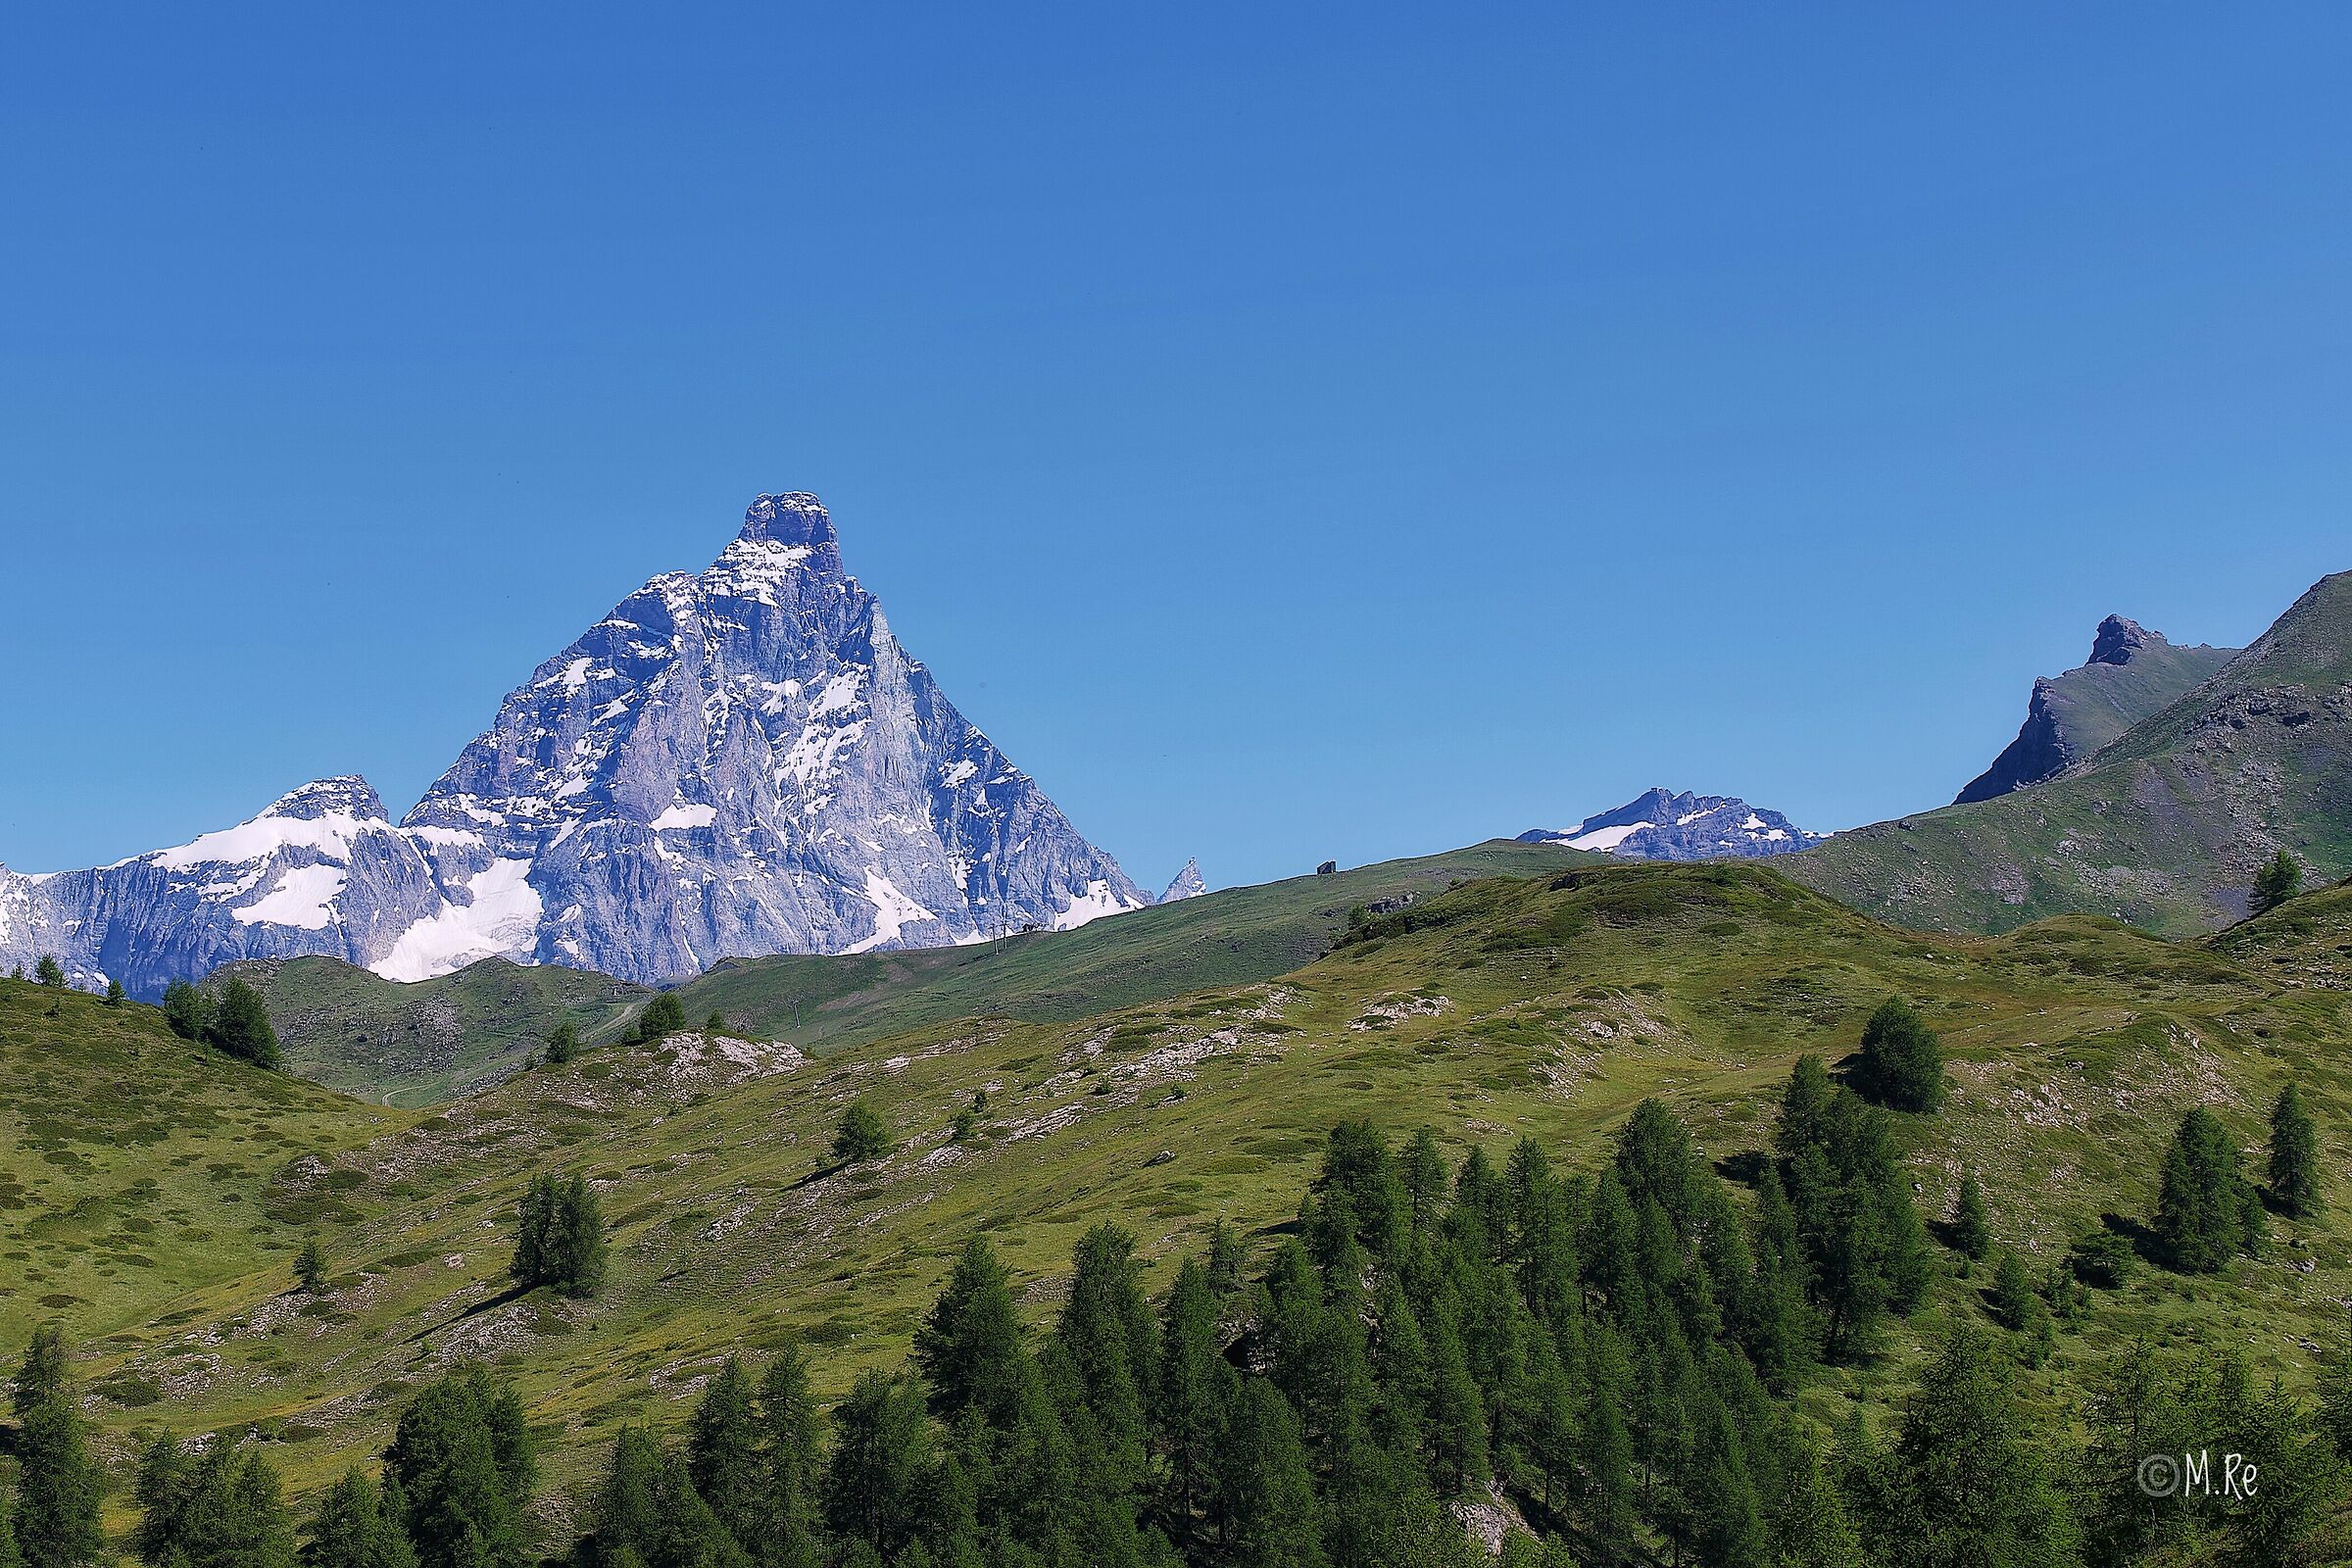 The Matterhorn...